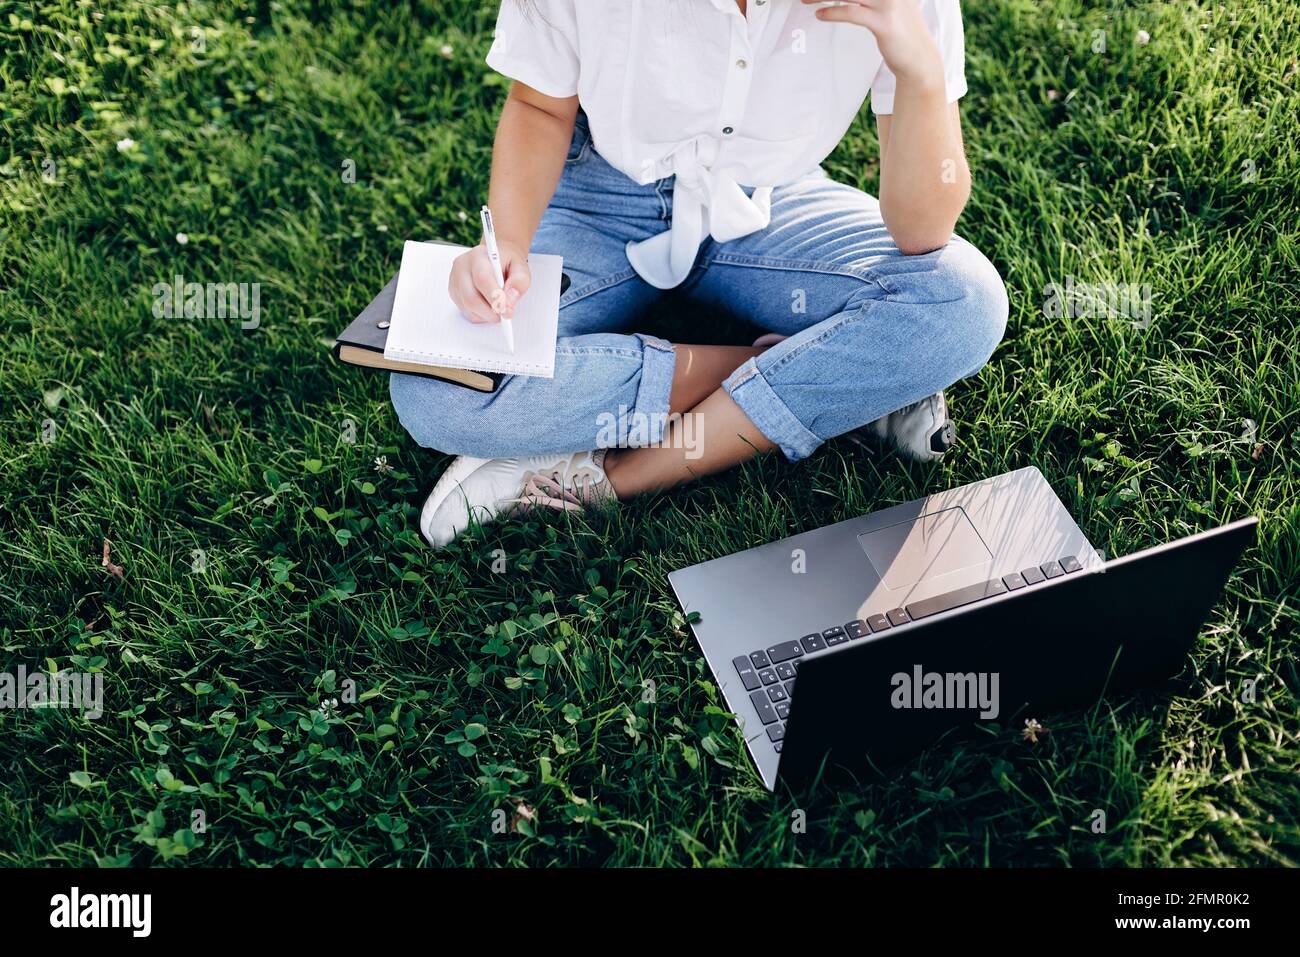 fille étudiante avec un ordinateur portable à l'extérieur assis sur l'herbe, surfer sur internet ou se préparer aux examens. Technologie, éducation et travail à distance. Donc Banque D'Images